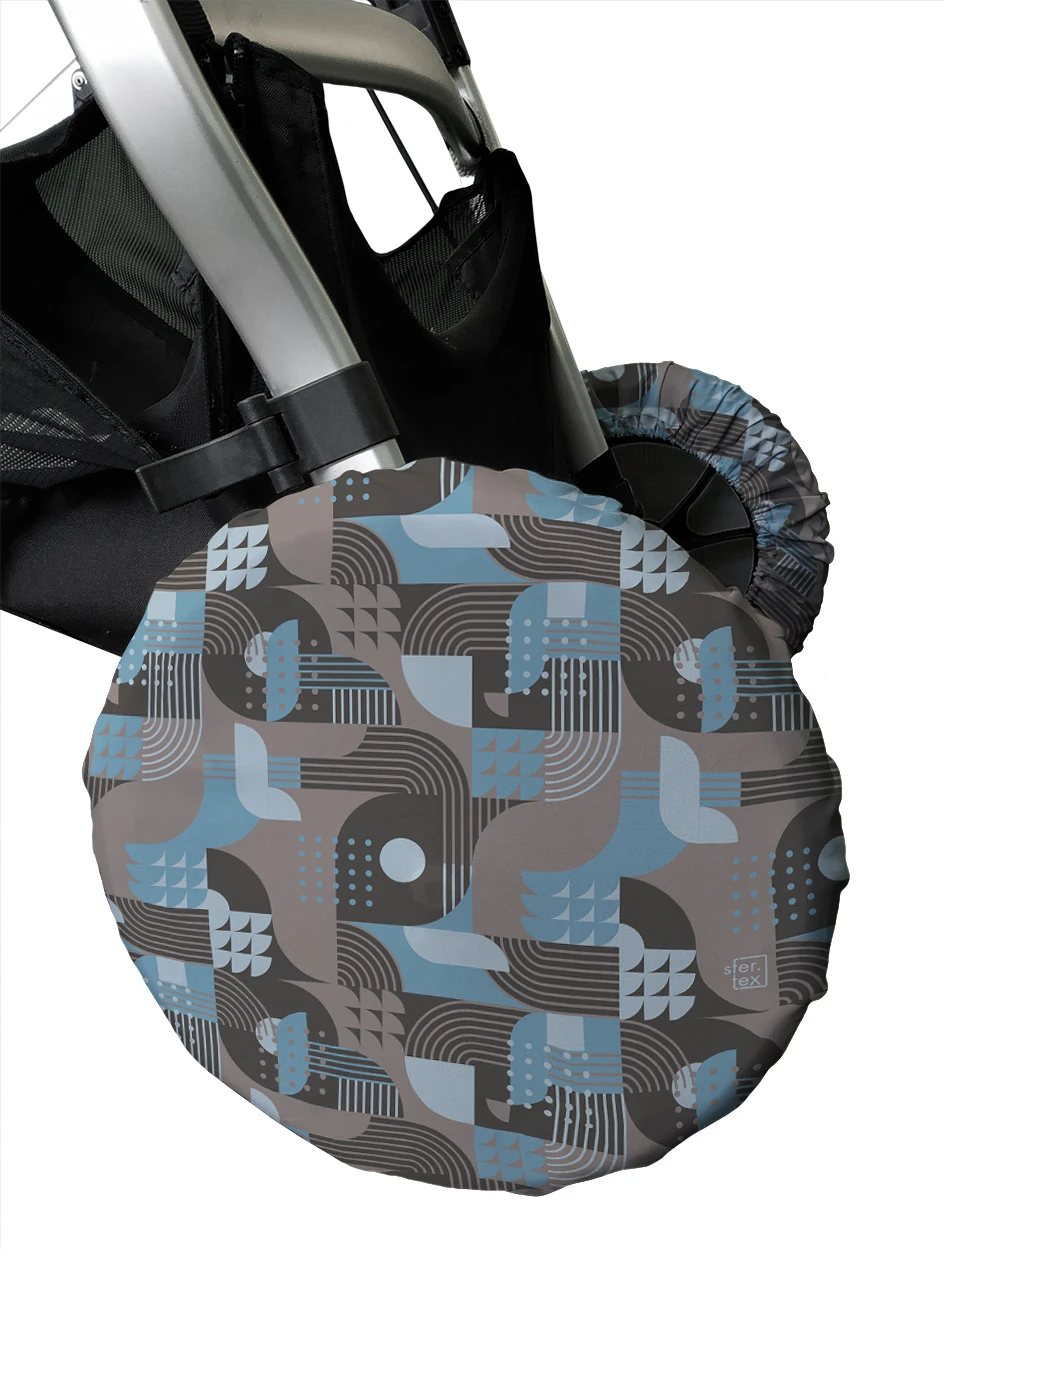 Чехлы на колеса коляски sfer.tex Геометрический дизайн 32 см, 4 штуки